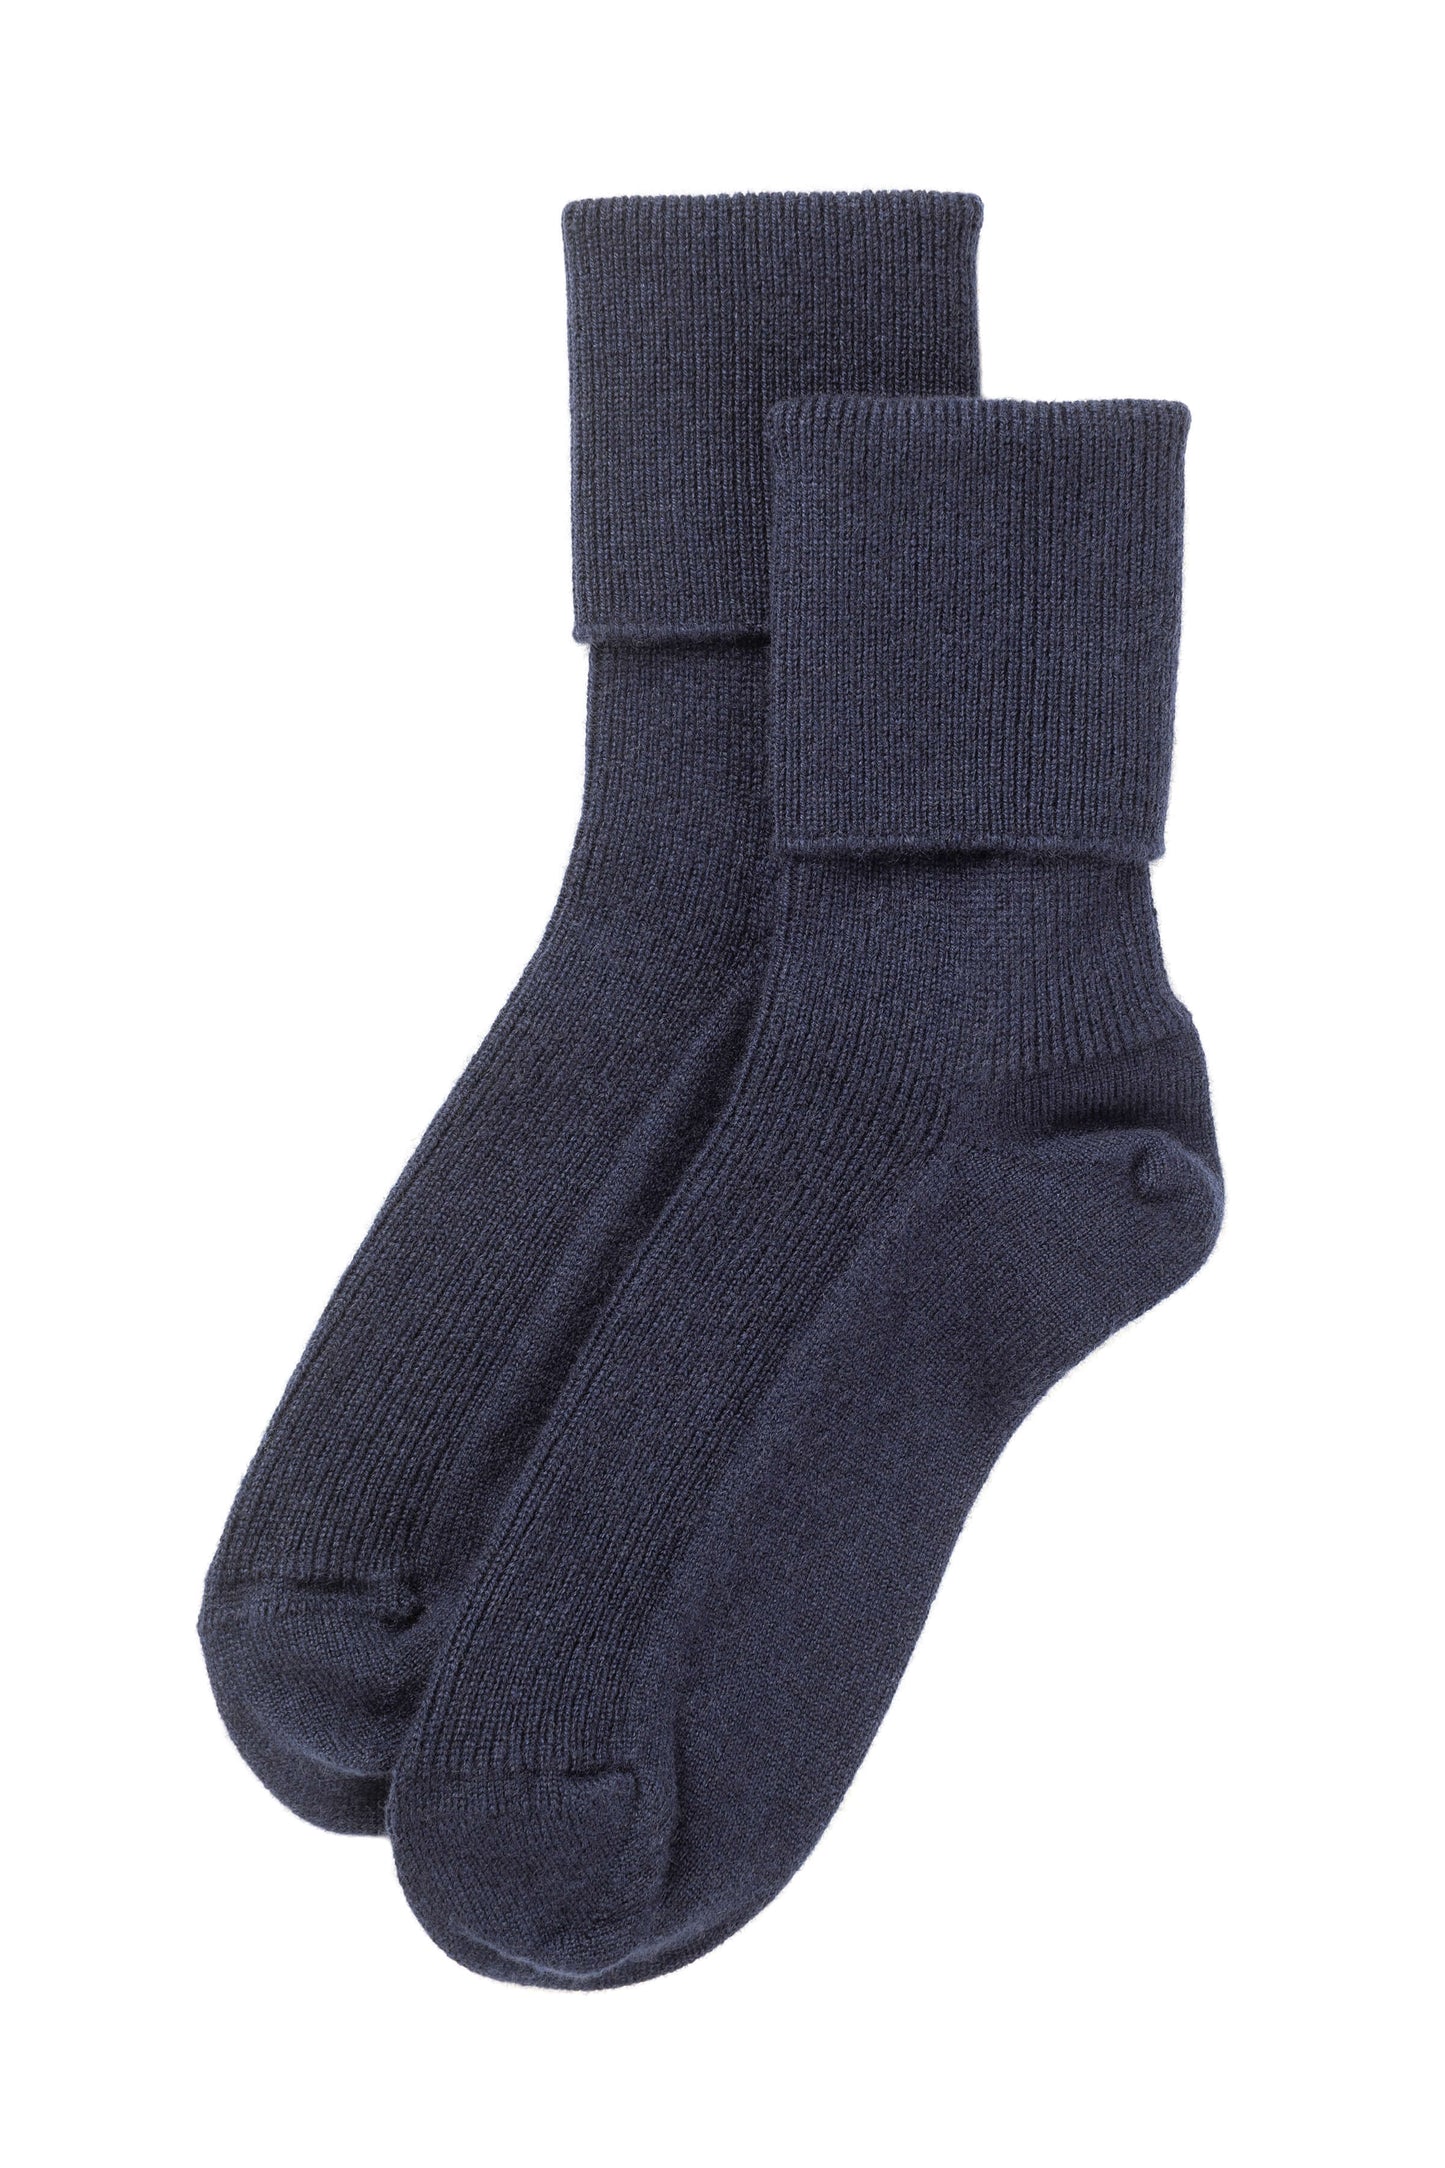 Johnstons of Elgin’s Navy blue Women's Cashmere Socks on a white background HBN00007SD0707